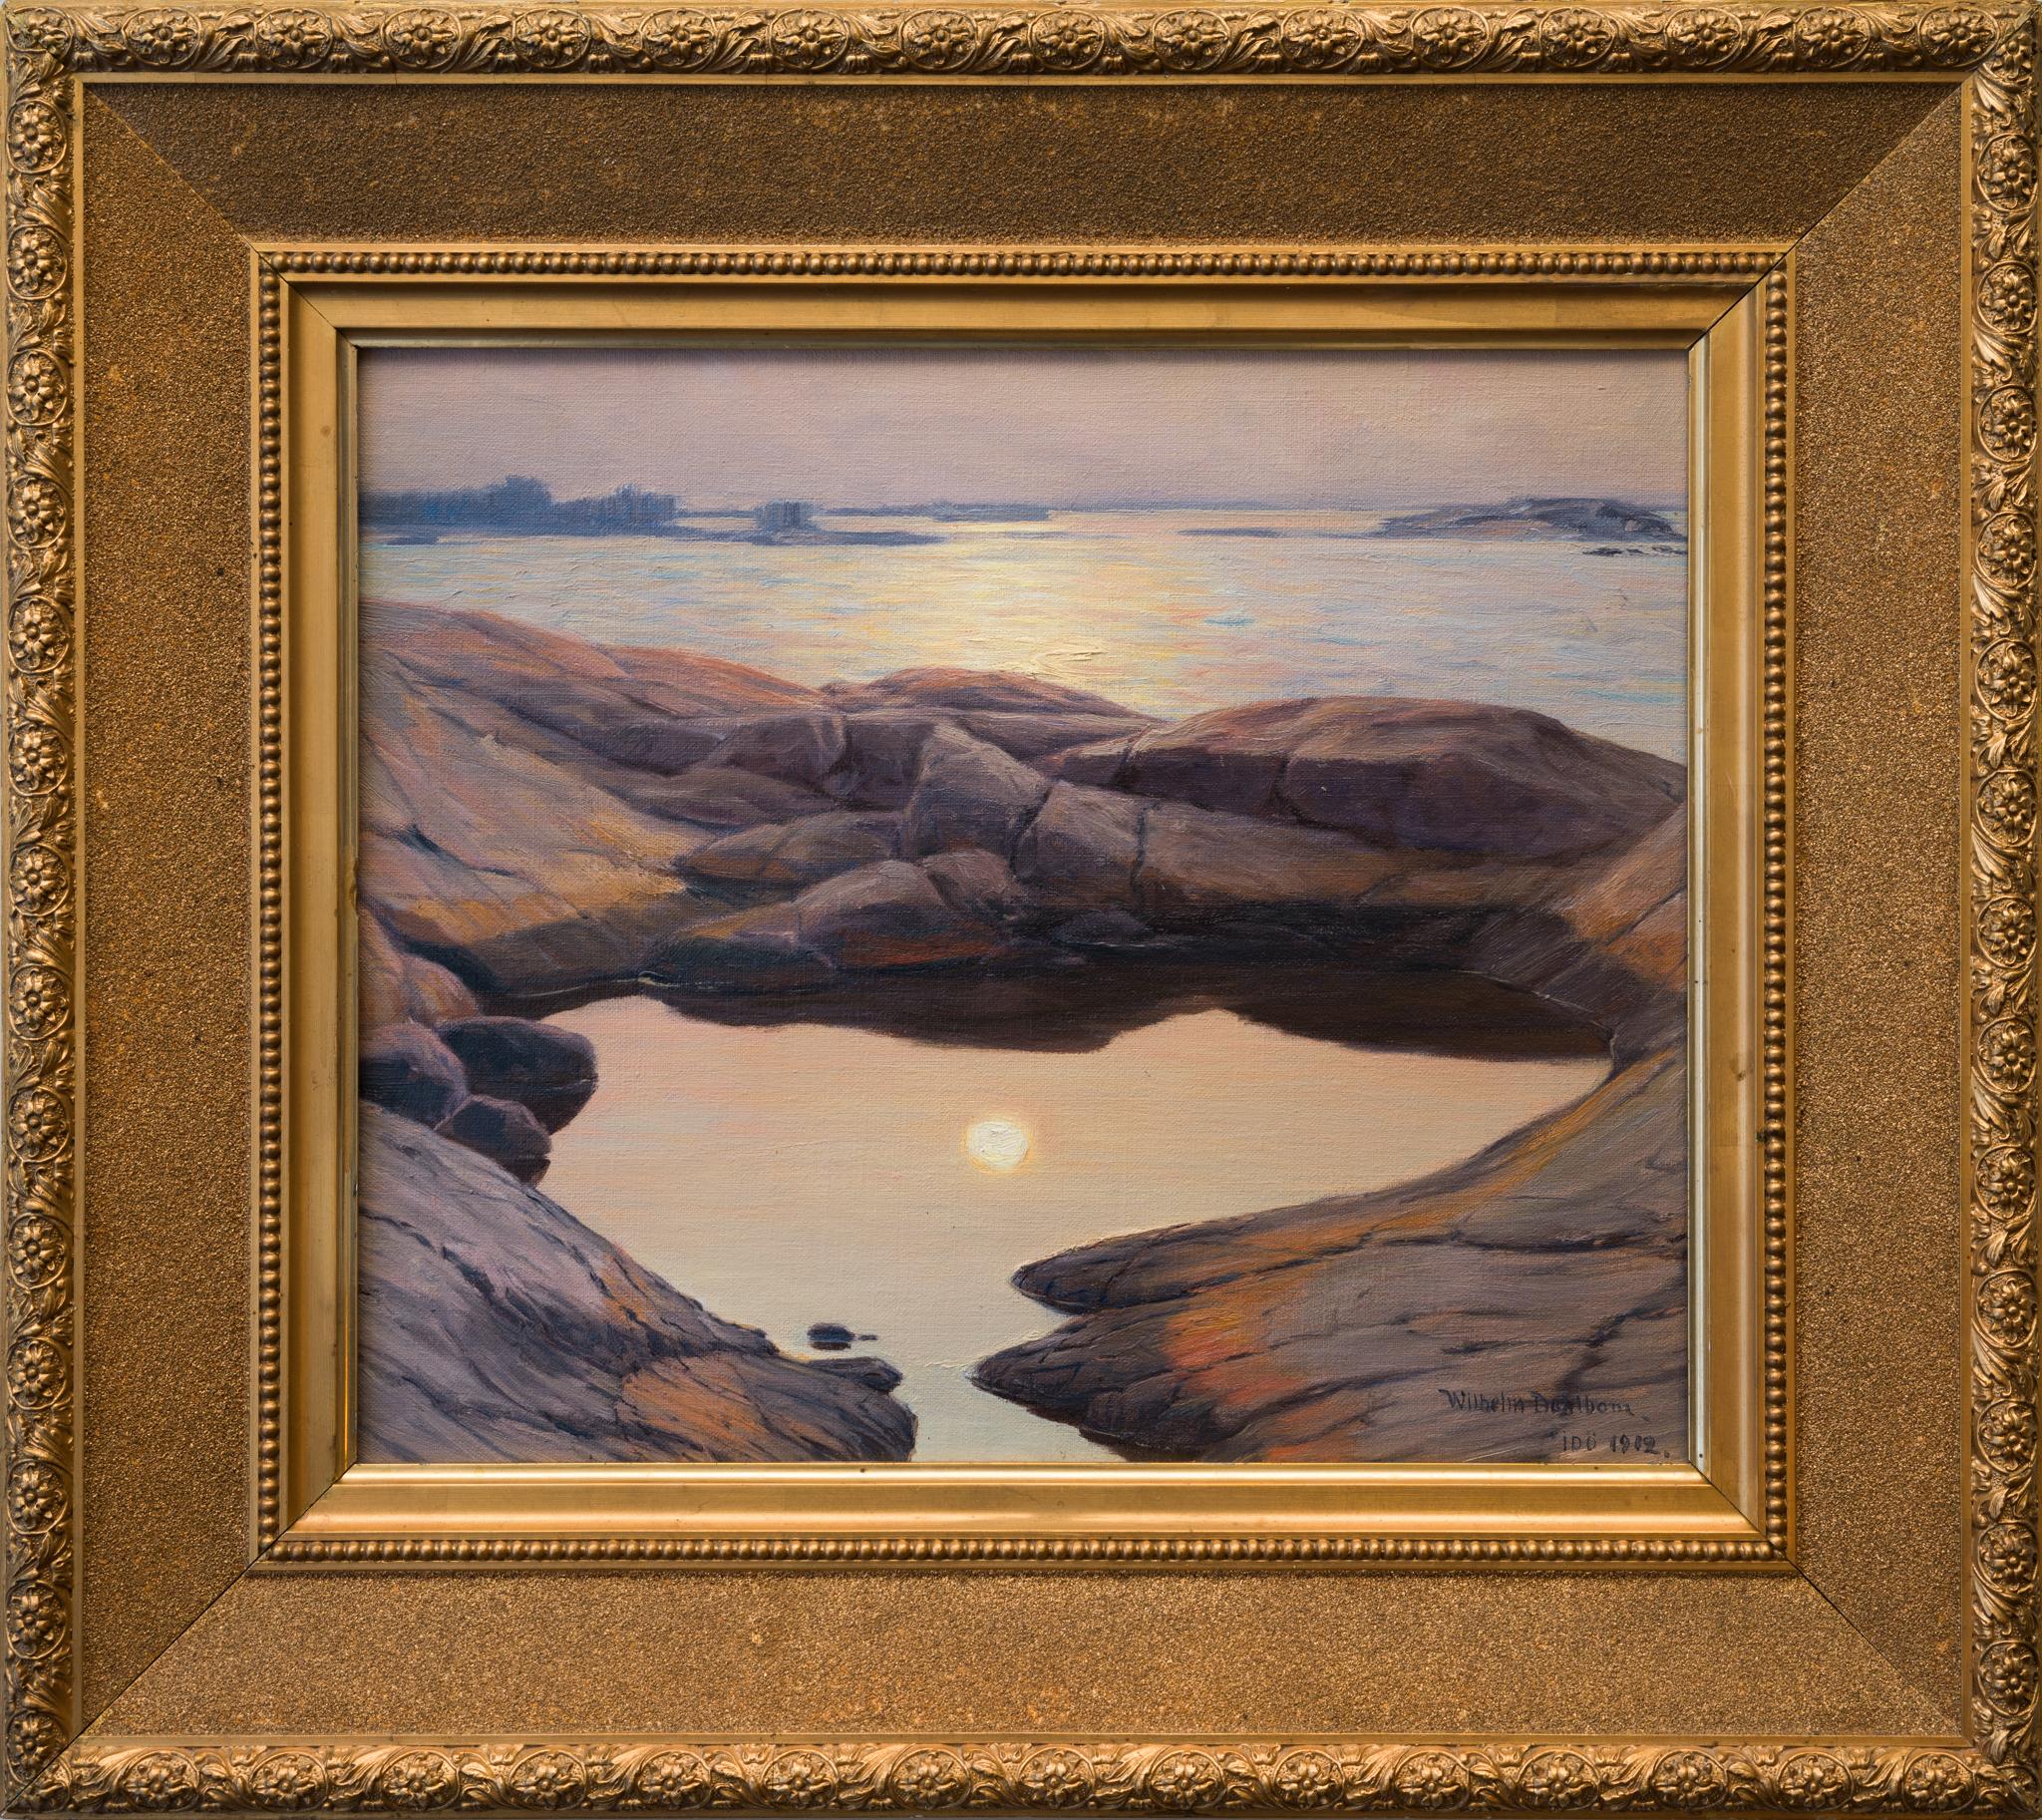 Nous avons le plaisir de présenter cette œuvre exquise de l'artiste suédois Wilhelm Dahlbom, intitulée "Clair de lune, Idö, 1912". Cette œuvre capture le reflet serein du clair de lune sur l'eau, la scène se déroulant sur un rivage accidenté où la